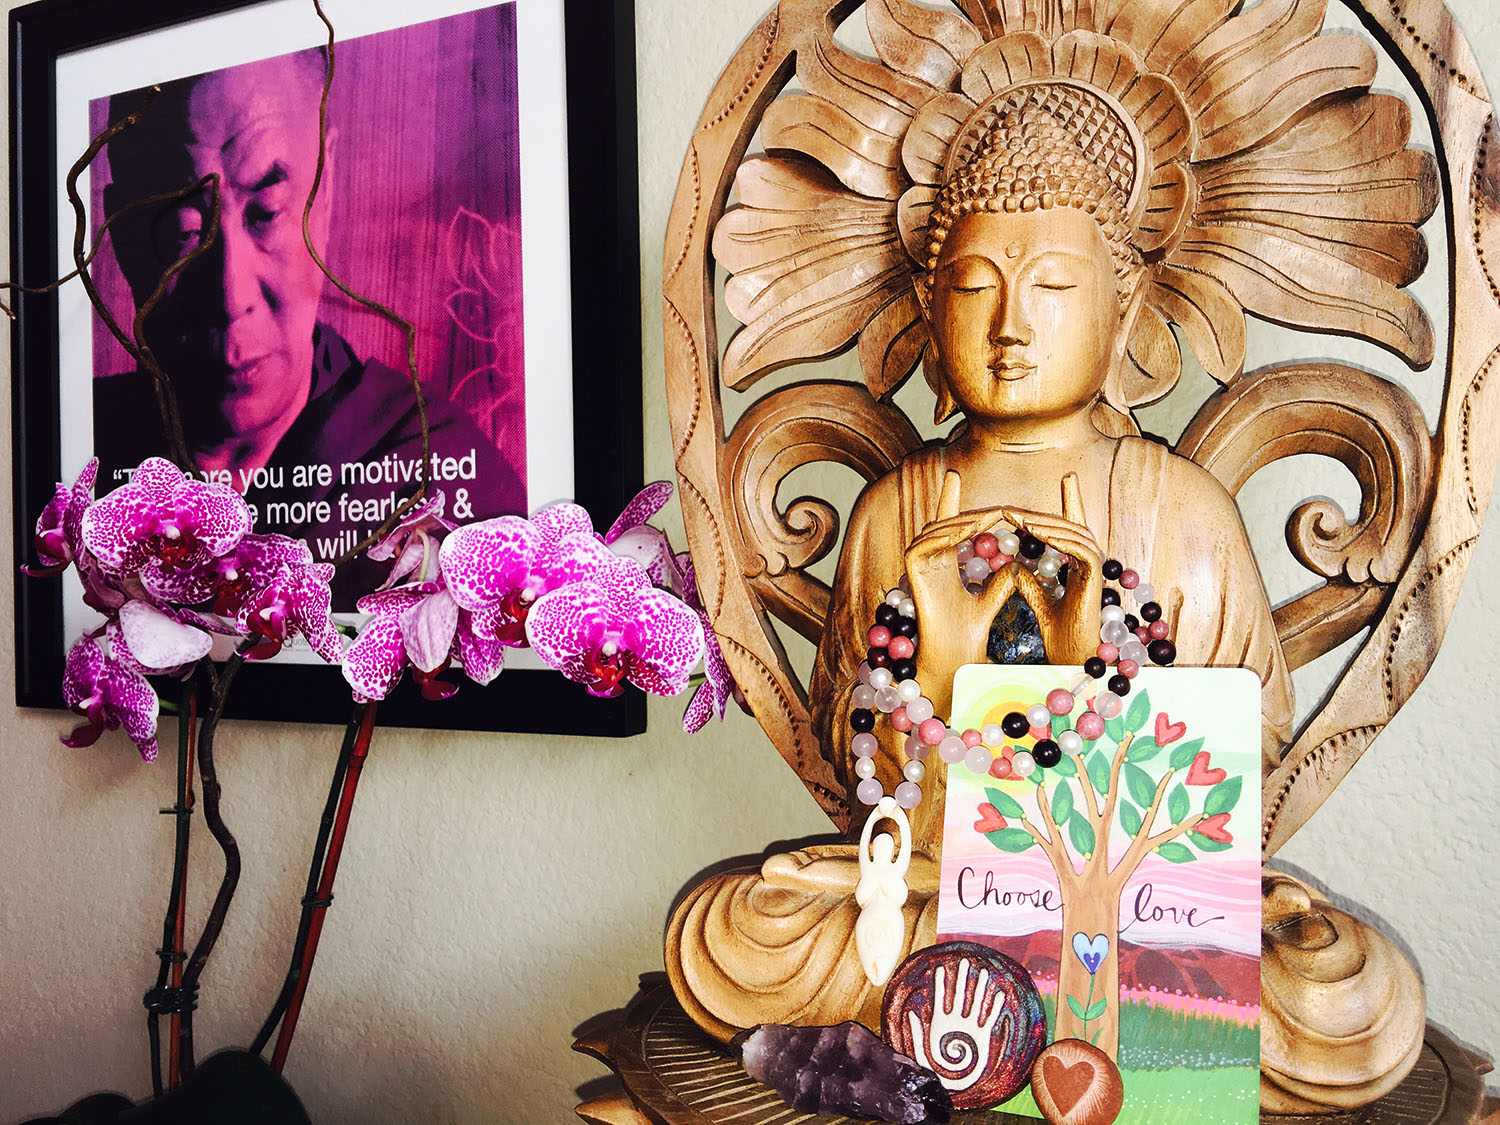 Image of Buddha and Dalai Lama for blog post